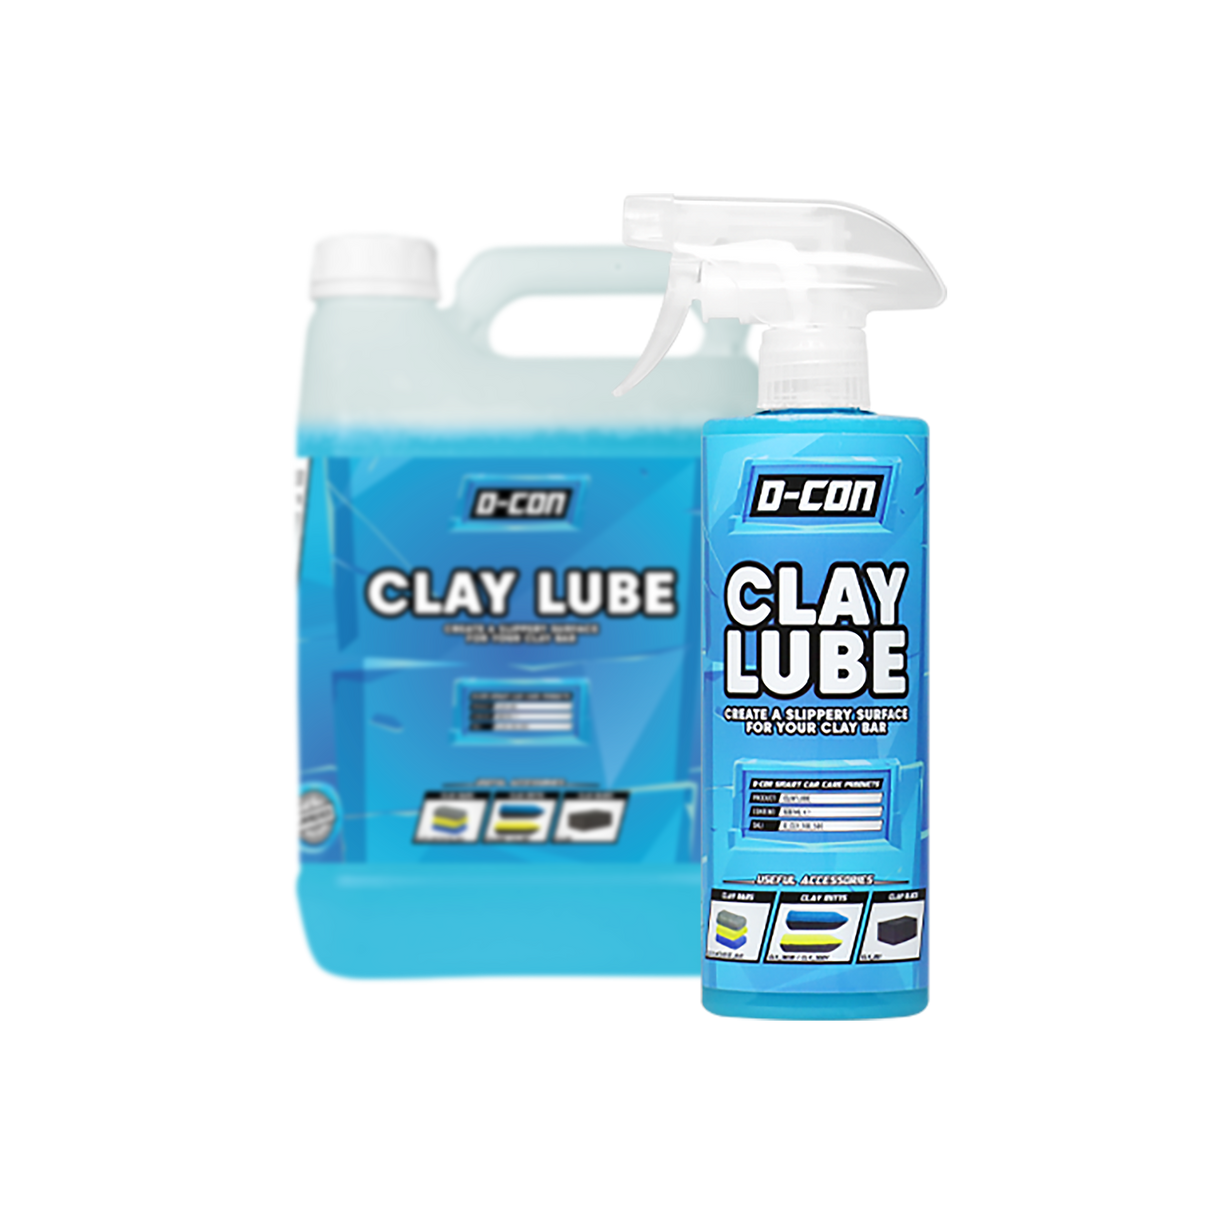 Clay-Lube Reinigungsknete Gleitspray